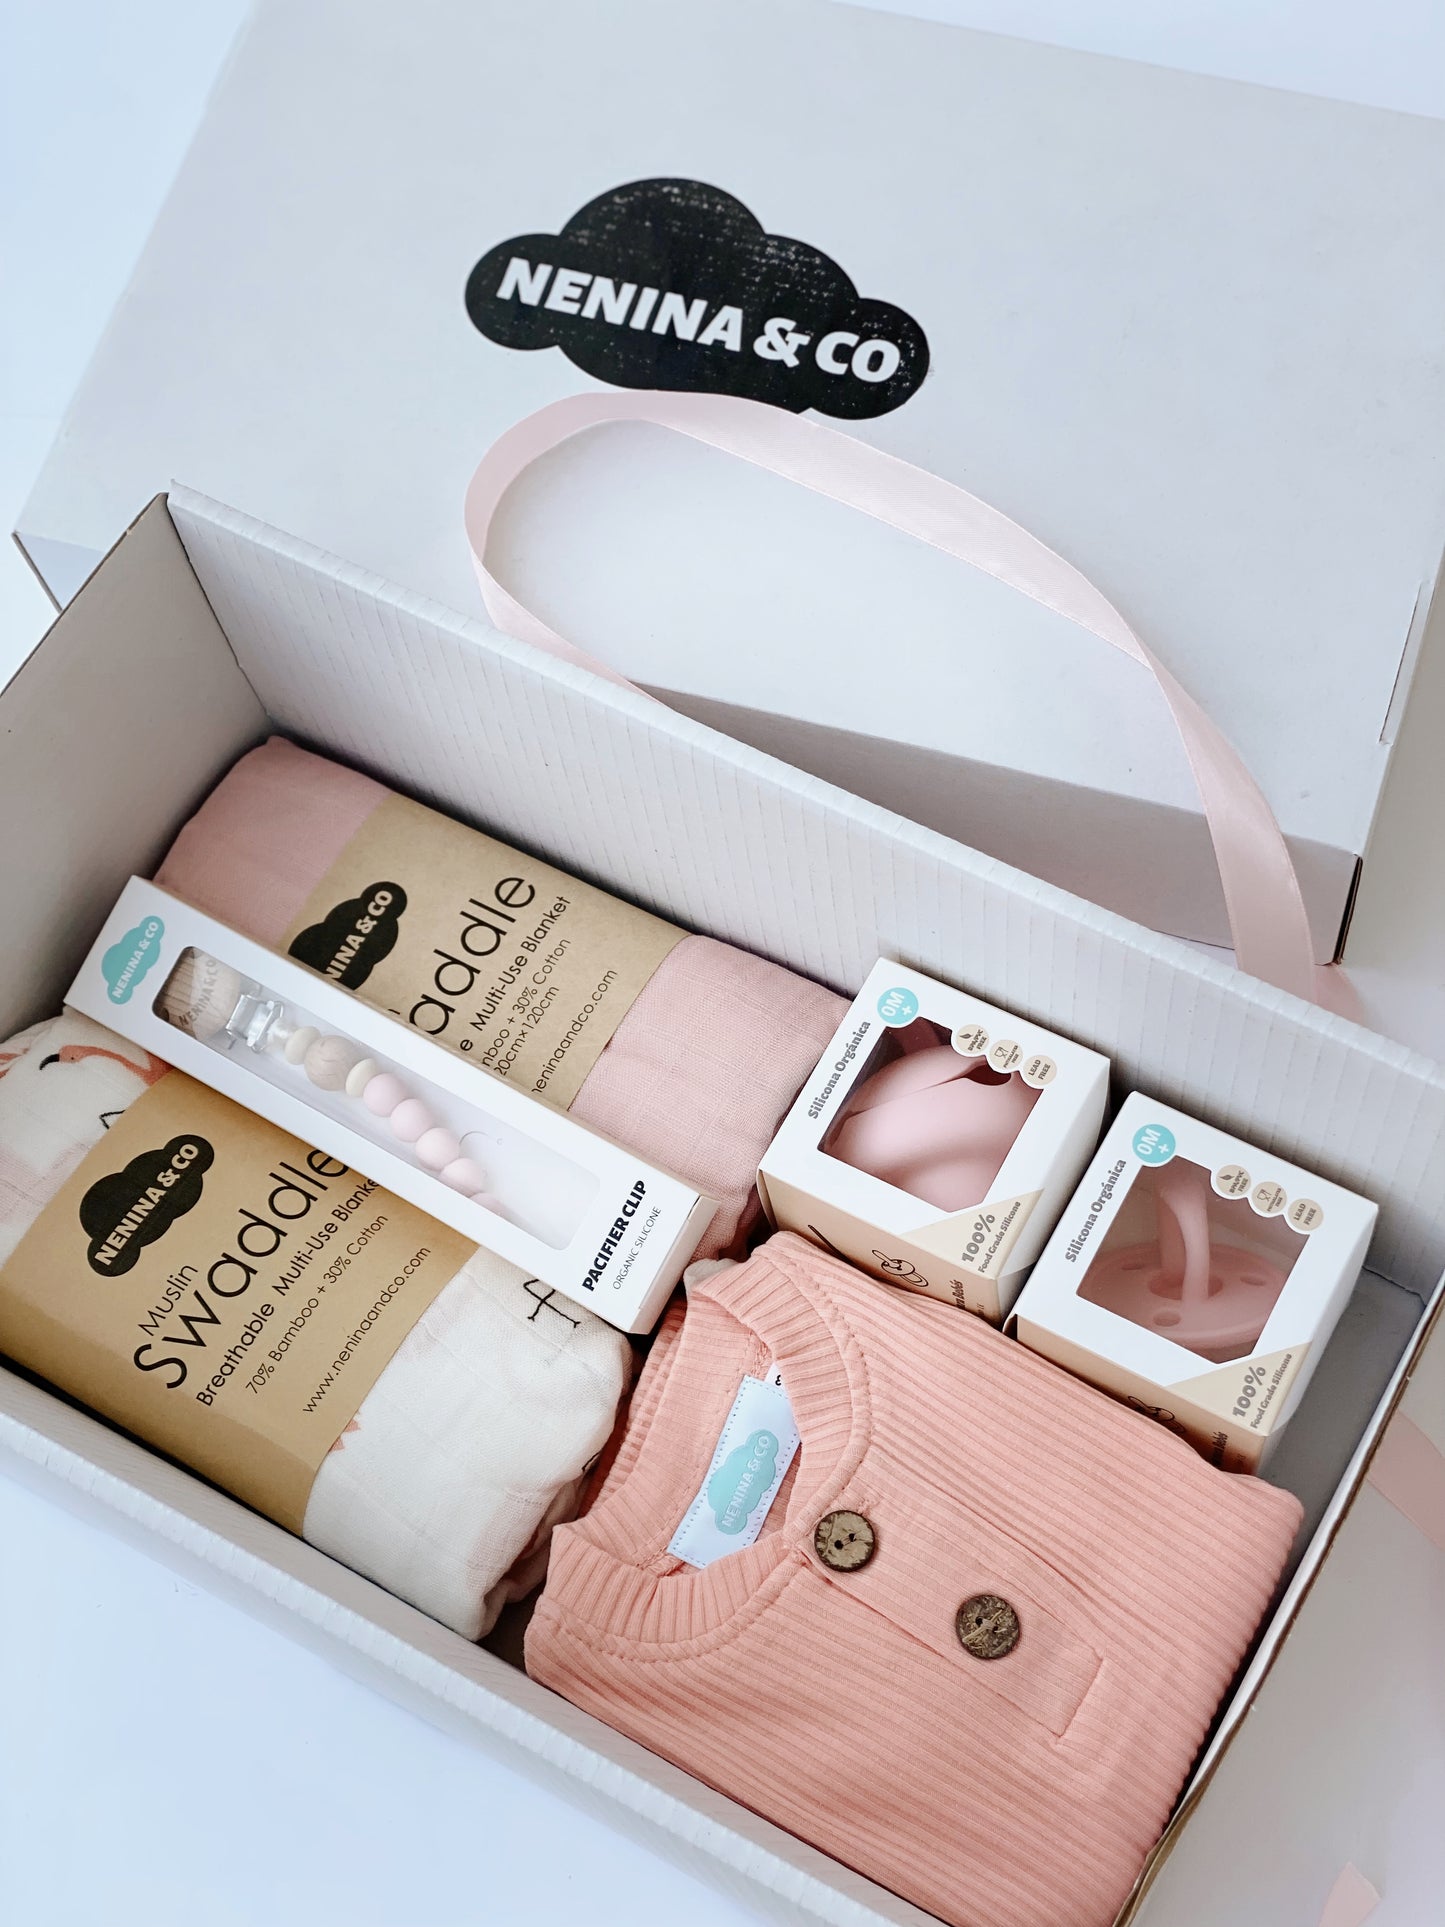 
                  
                    GIFT BOX 2 Nenina & Co
                  
                